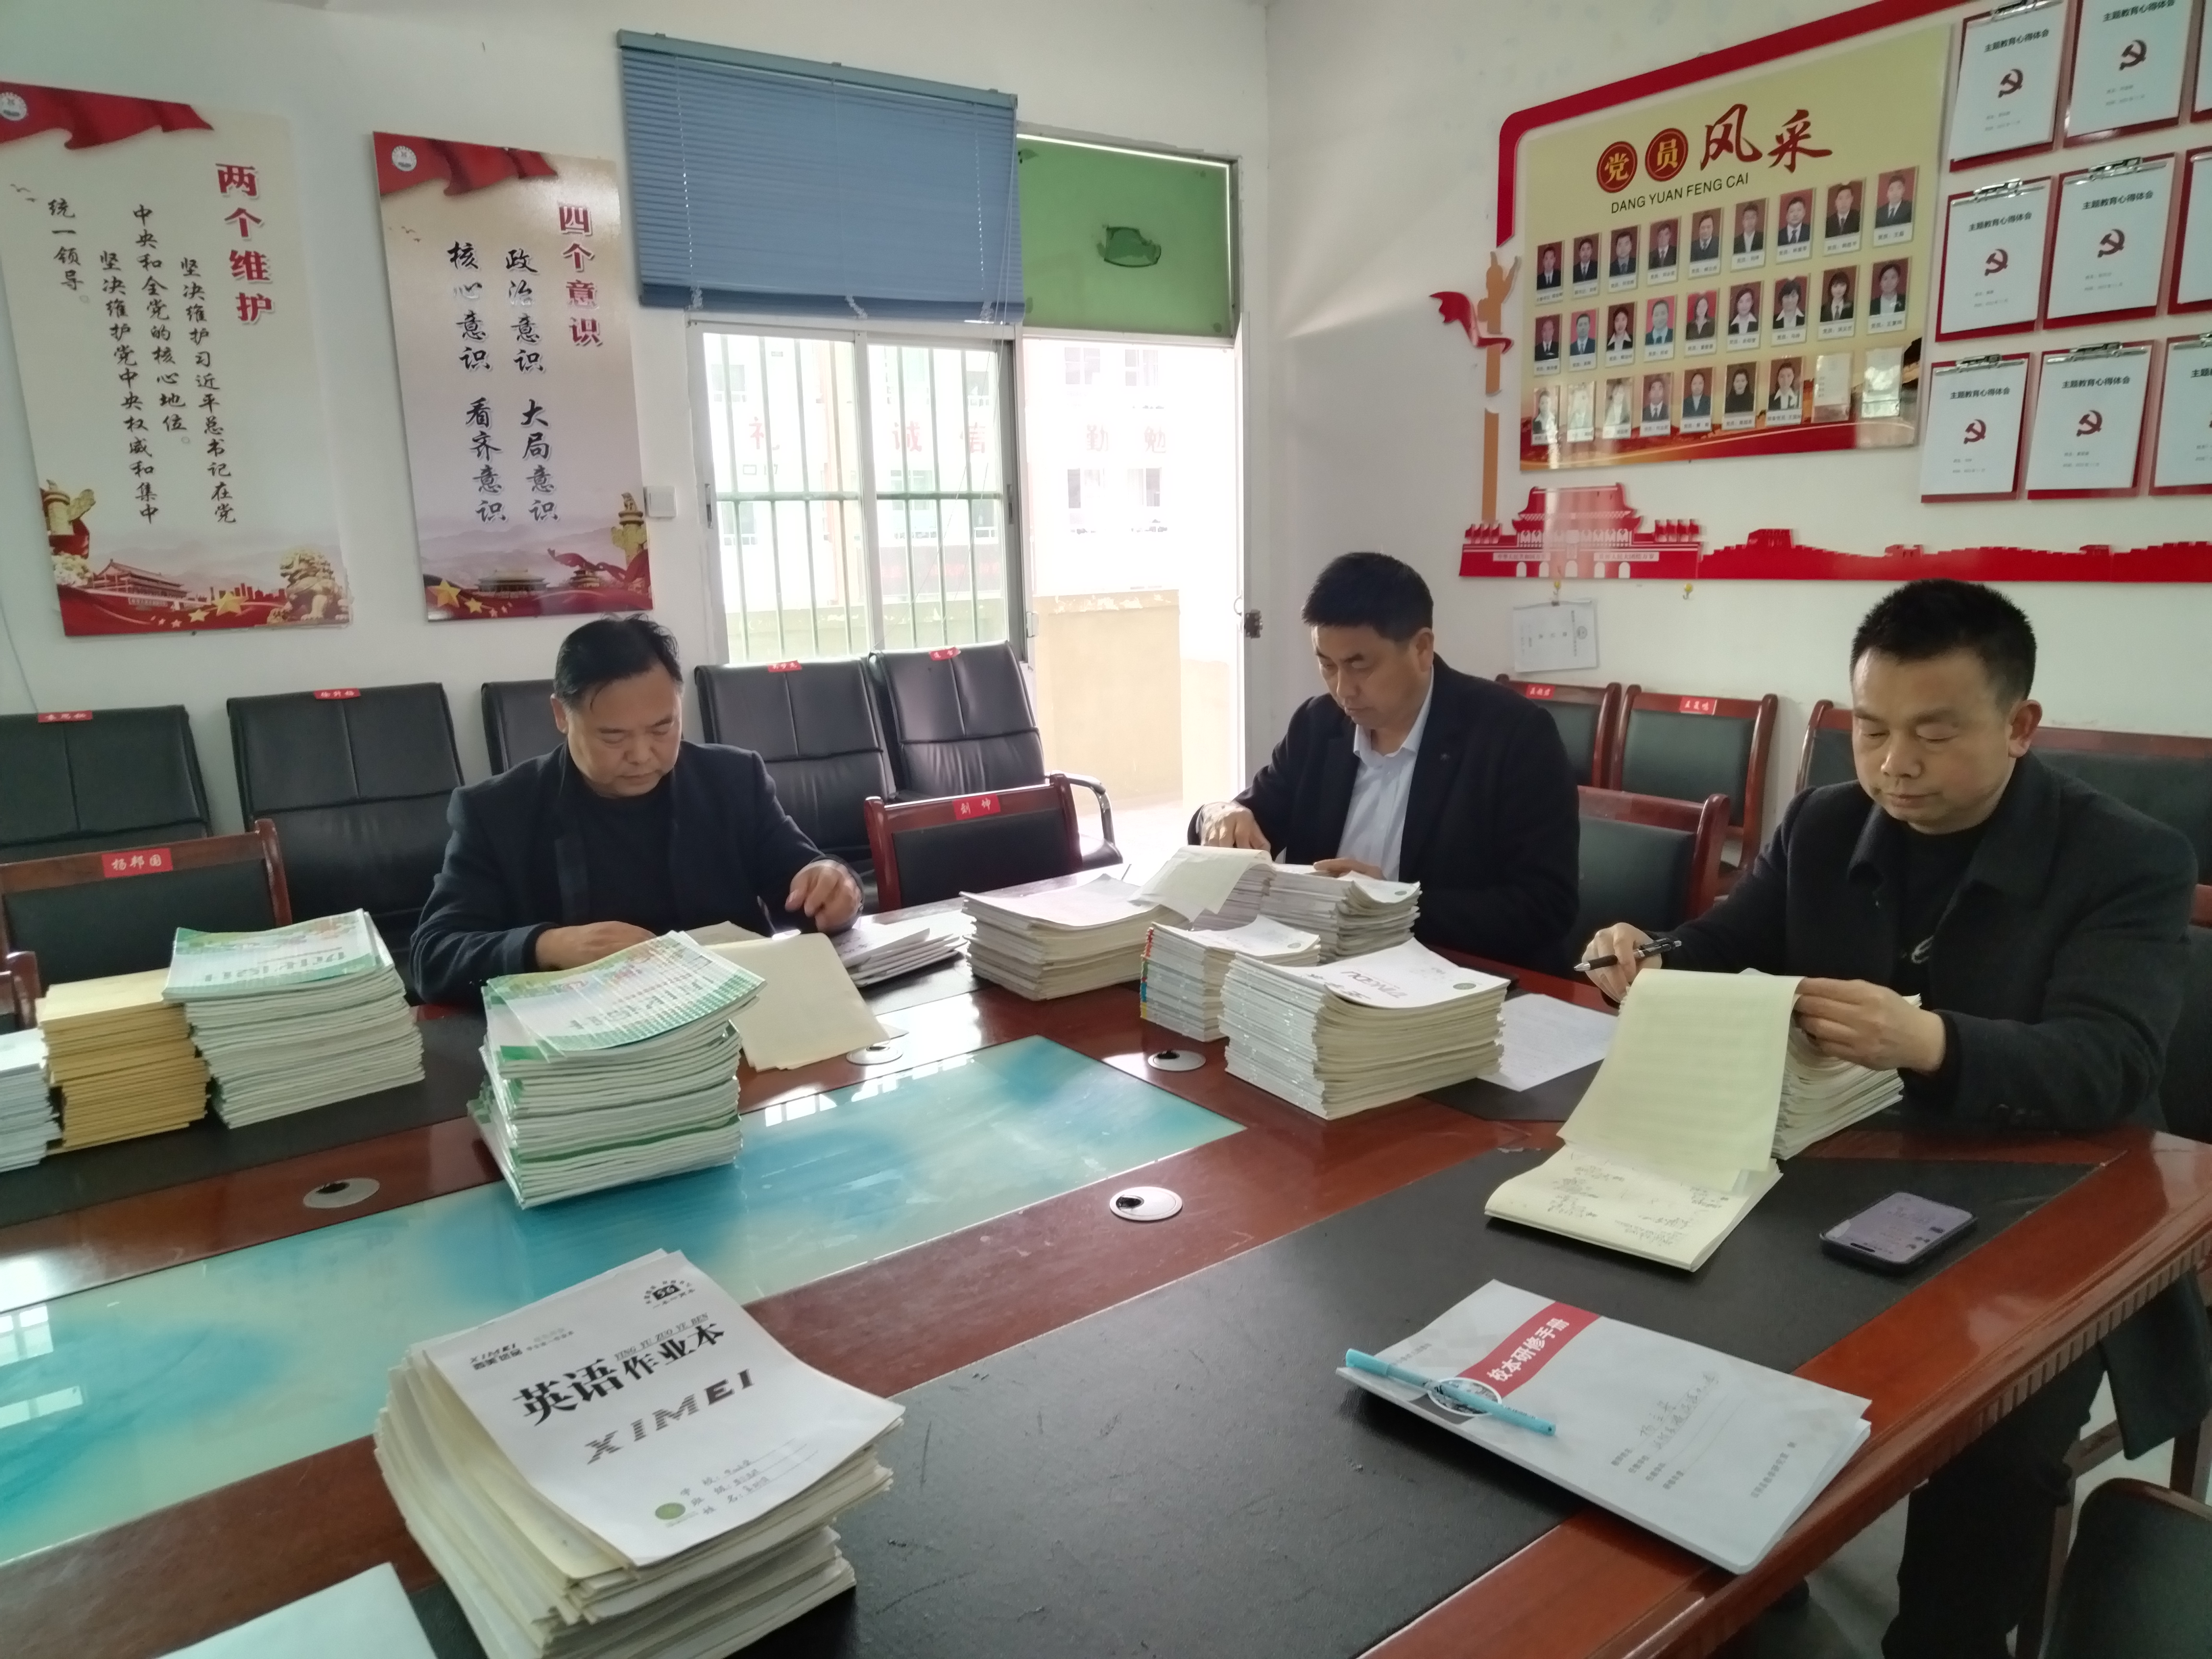 汉阴县漩涡镇督学责任区“四个聚焦”靶向督导助推教育质量提升